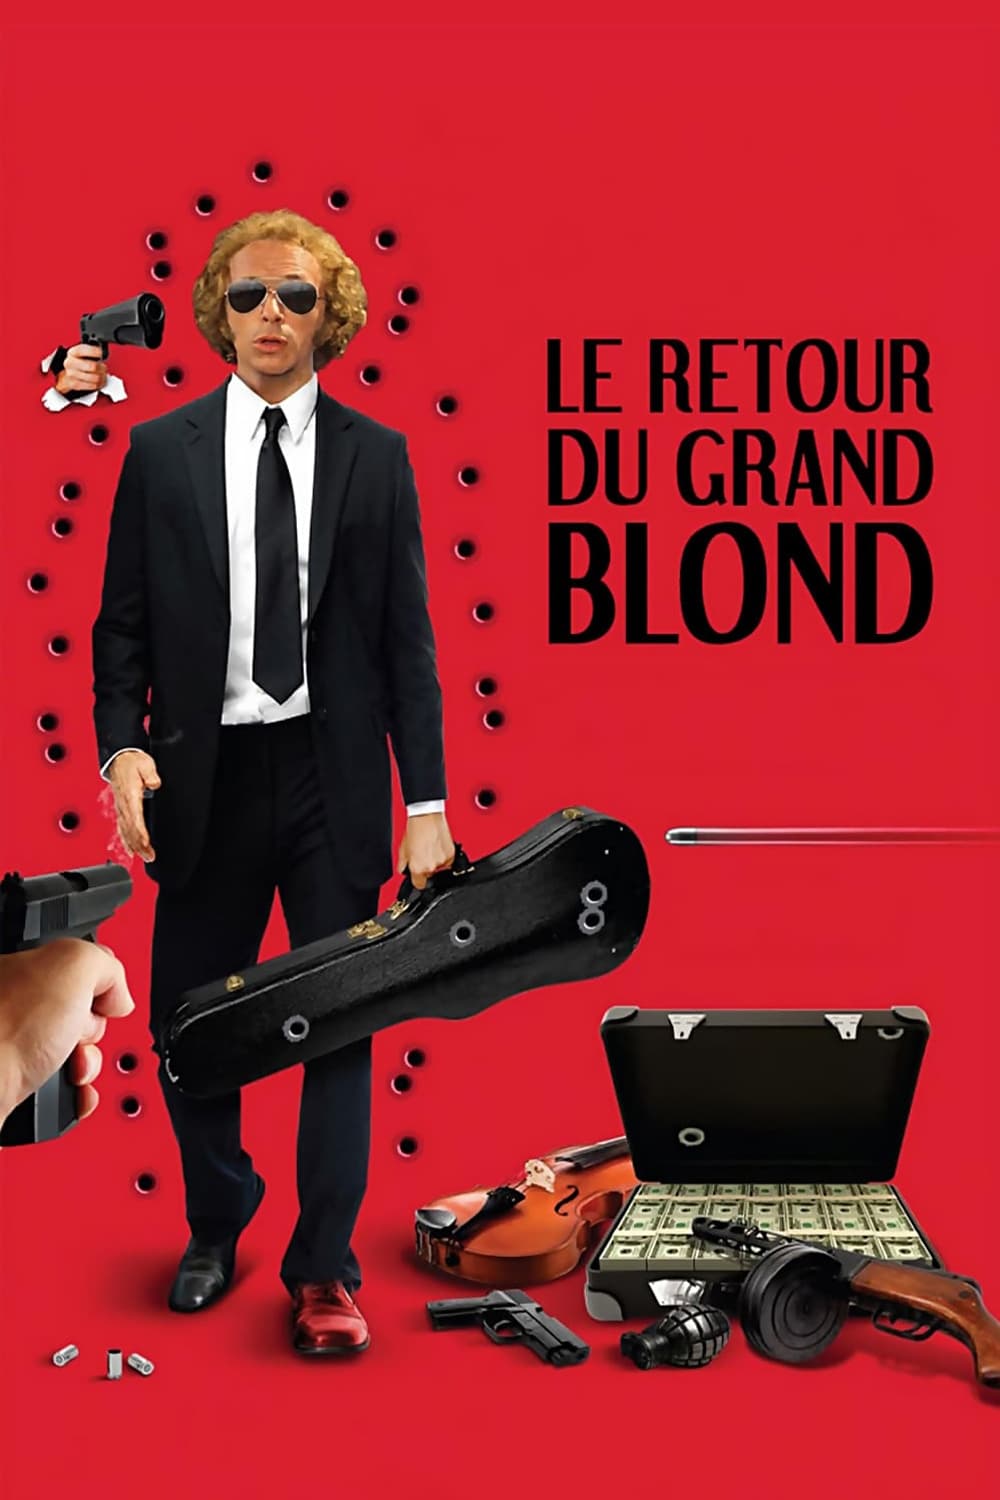 Affiche du film Le retour du grand blond poster